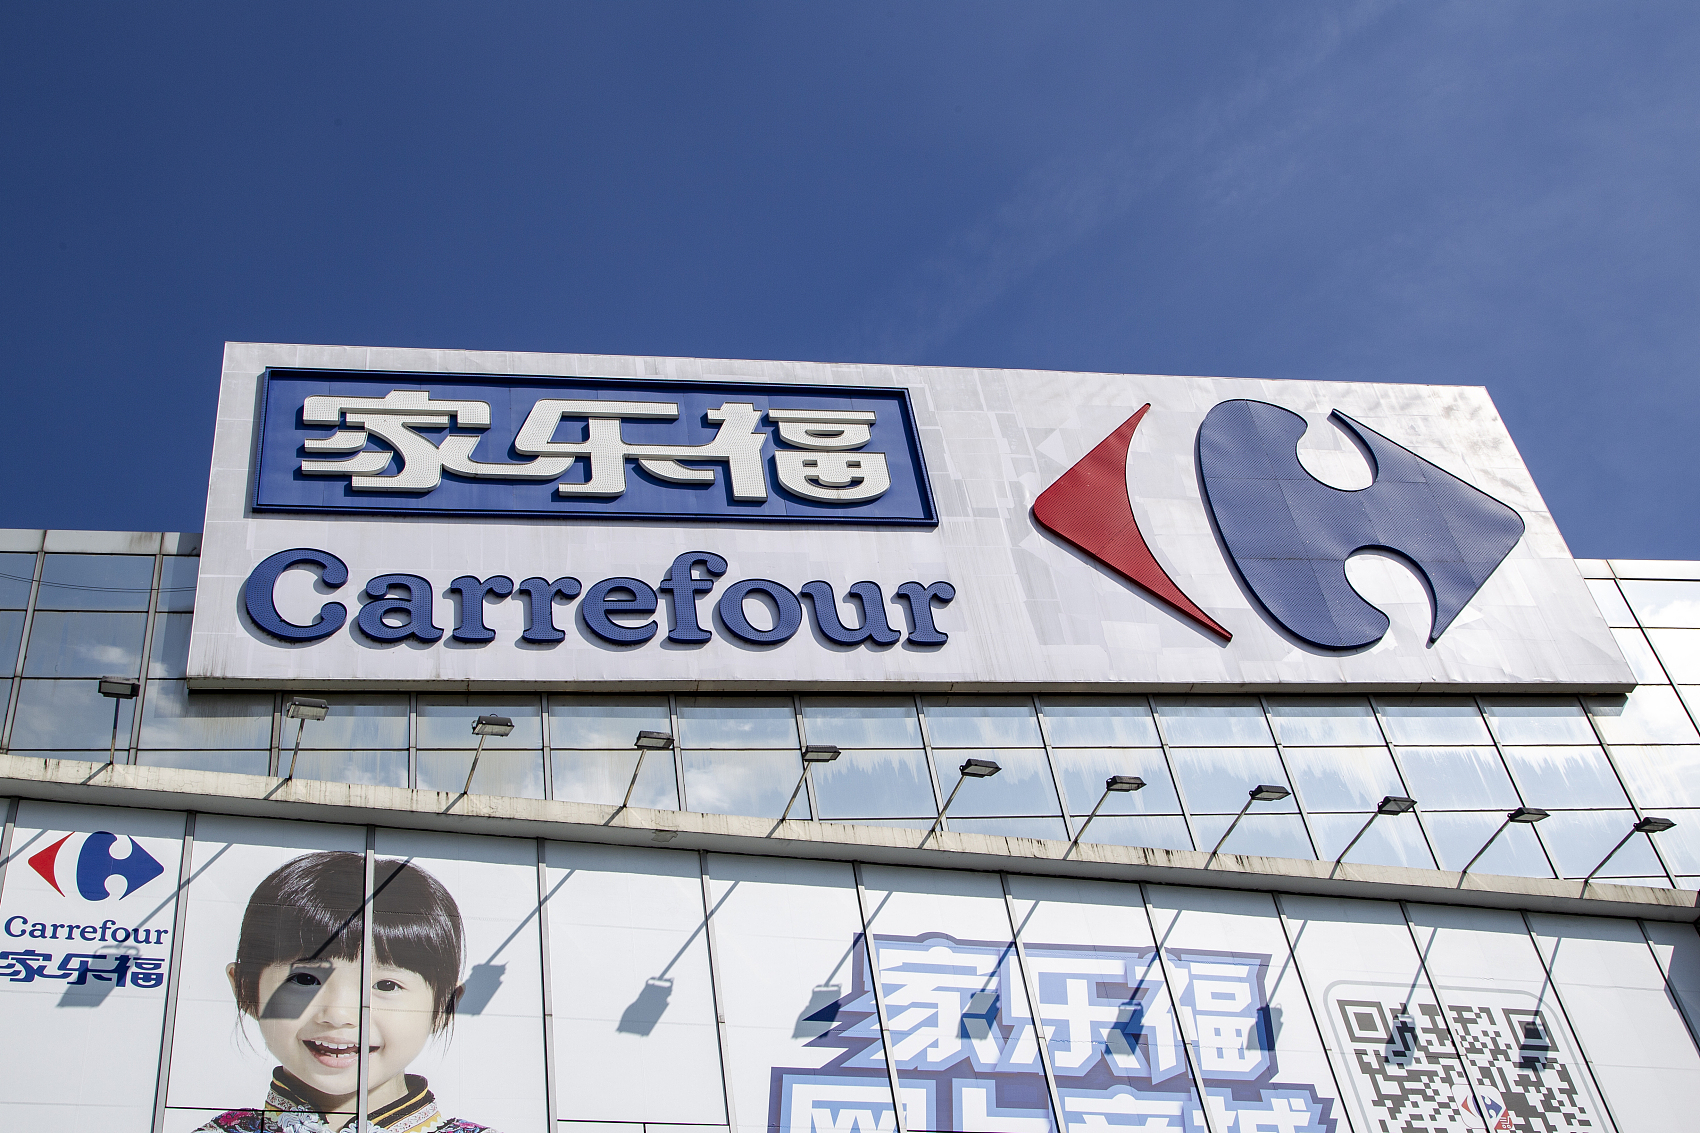 零售一周要闻:家乐福计划q4开出首家会员店 天猫,京东618预售业绩亮眼